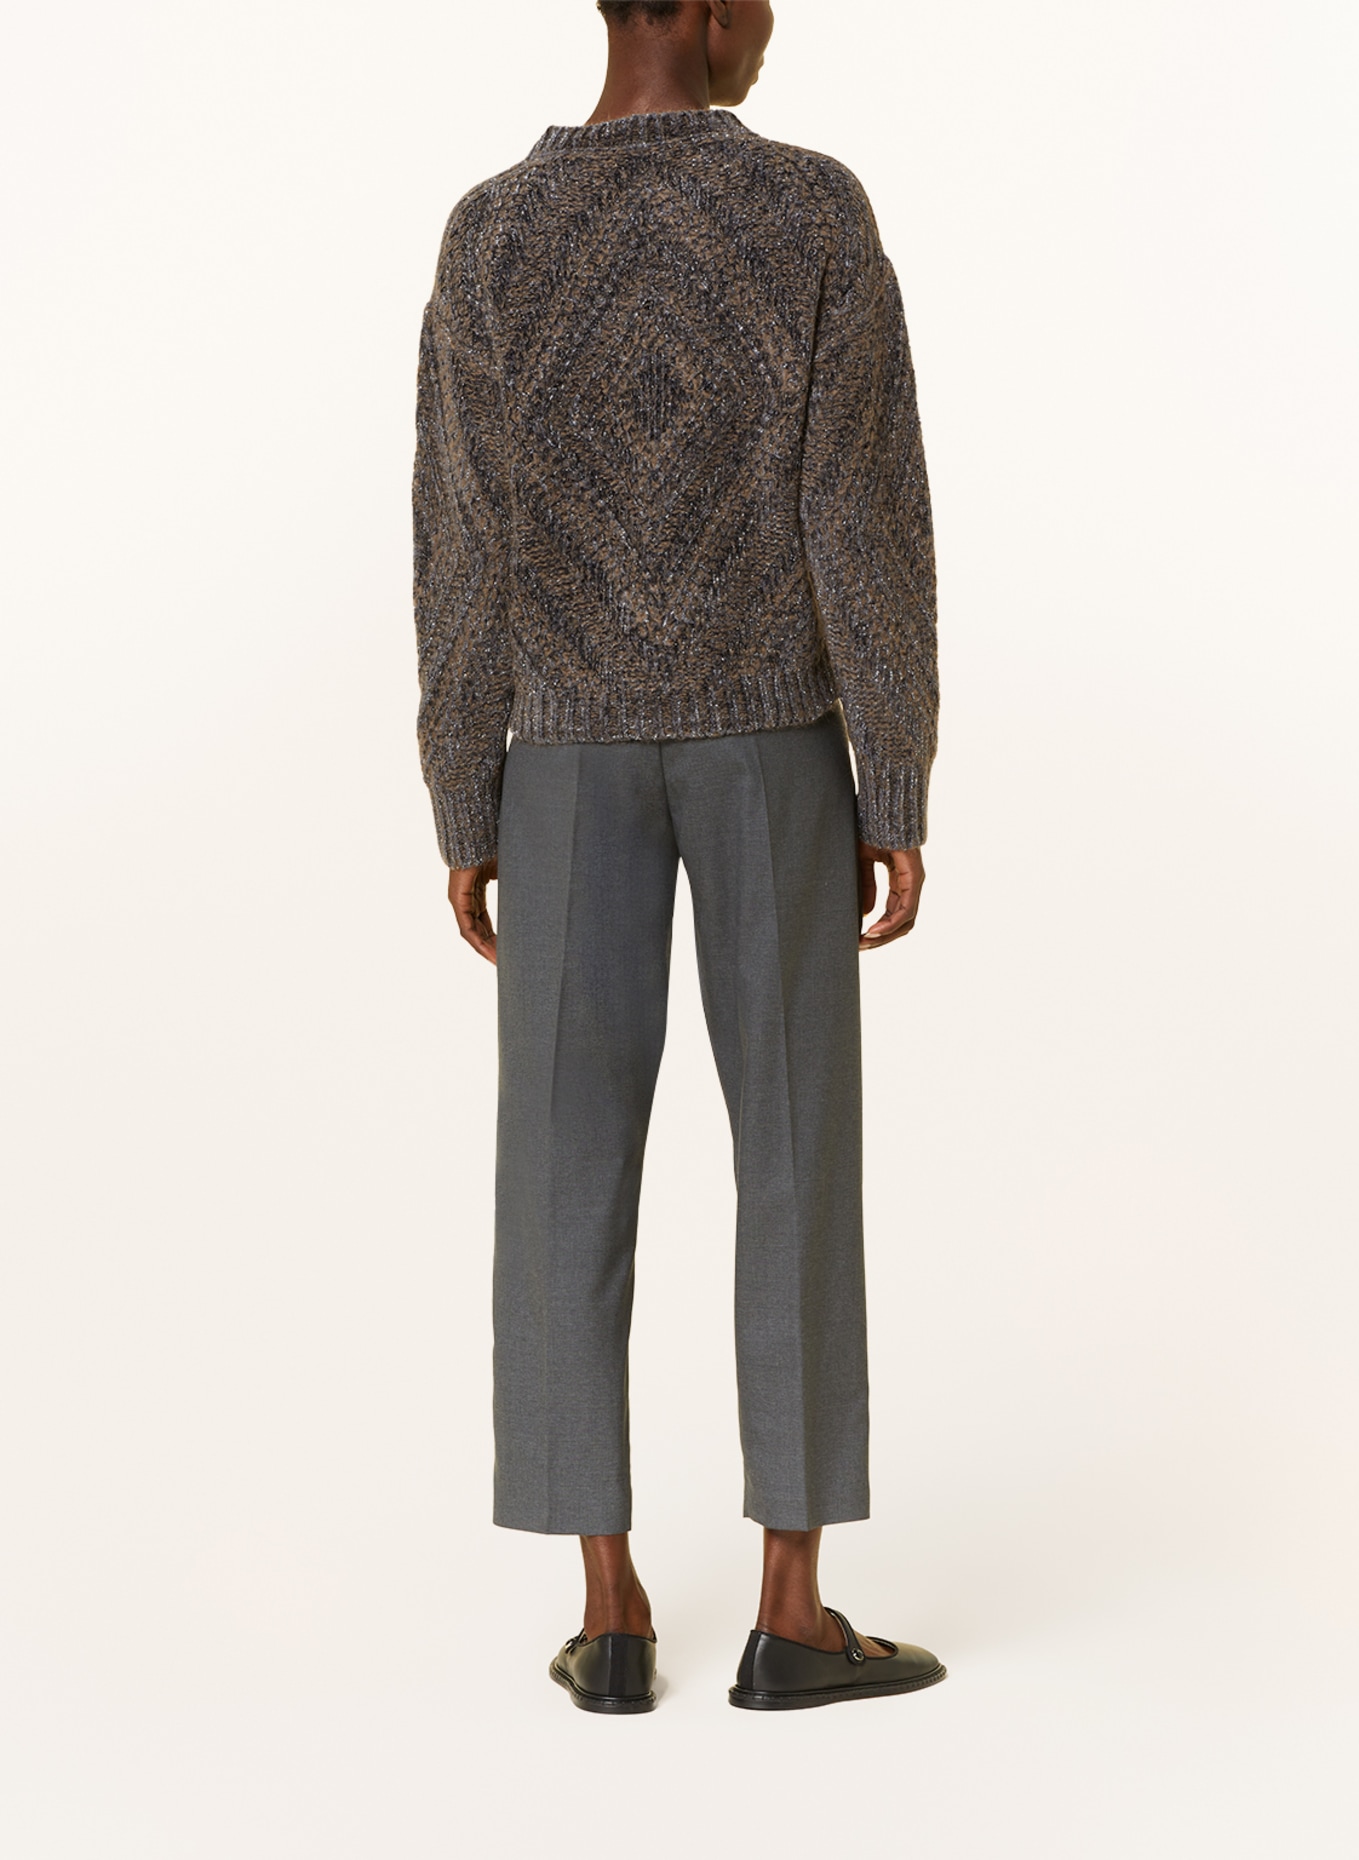 FABIANA FILIPPI Sweater with glitter thread, Color: DARK GRAY/ BROWN (Image 3)